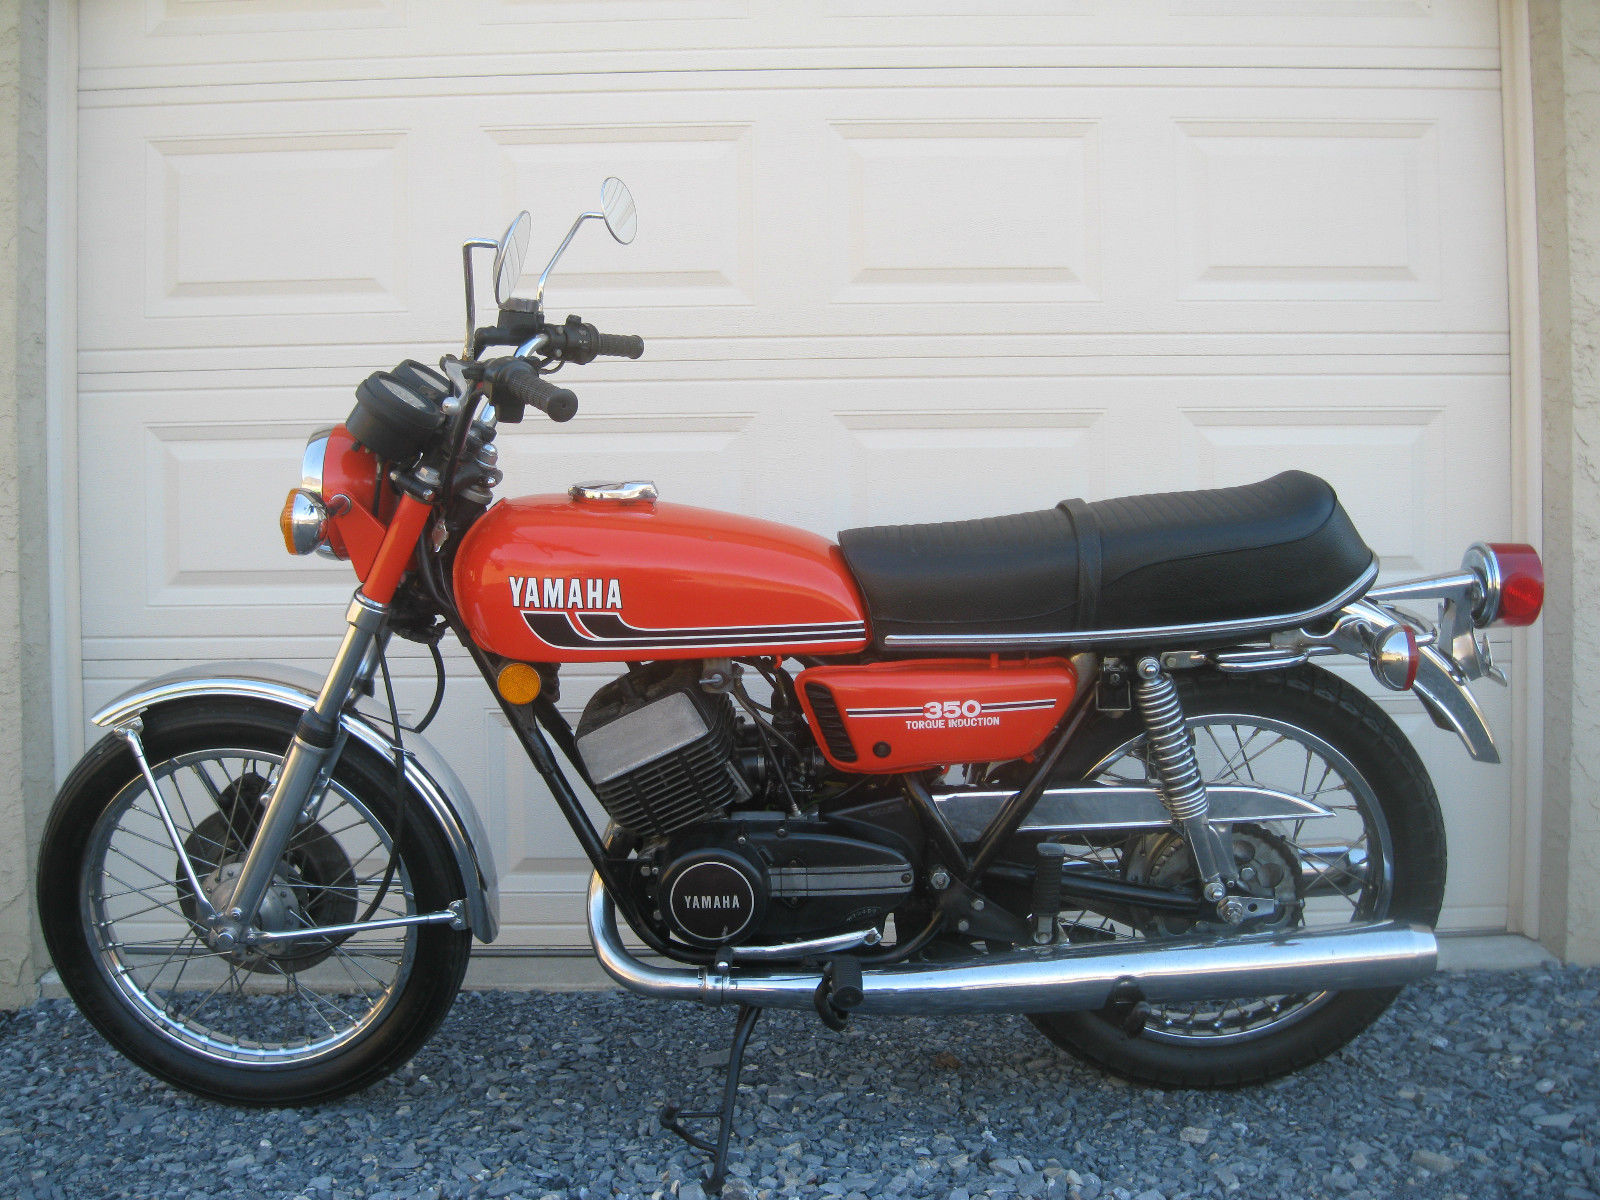 Yamaha RD350 – Left Side | Bike-urious